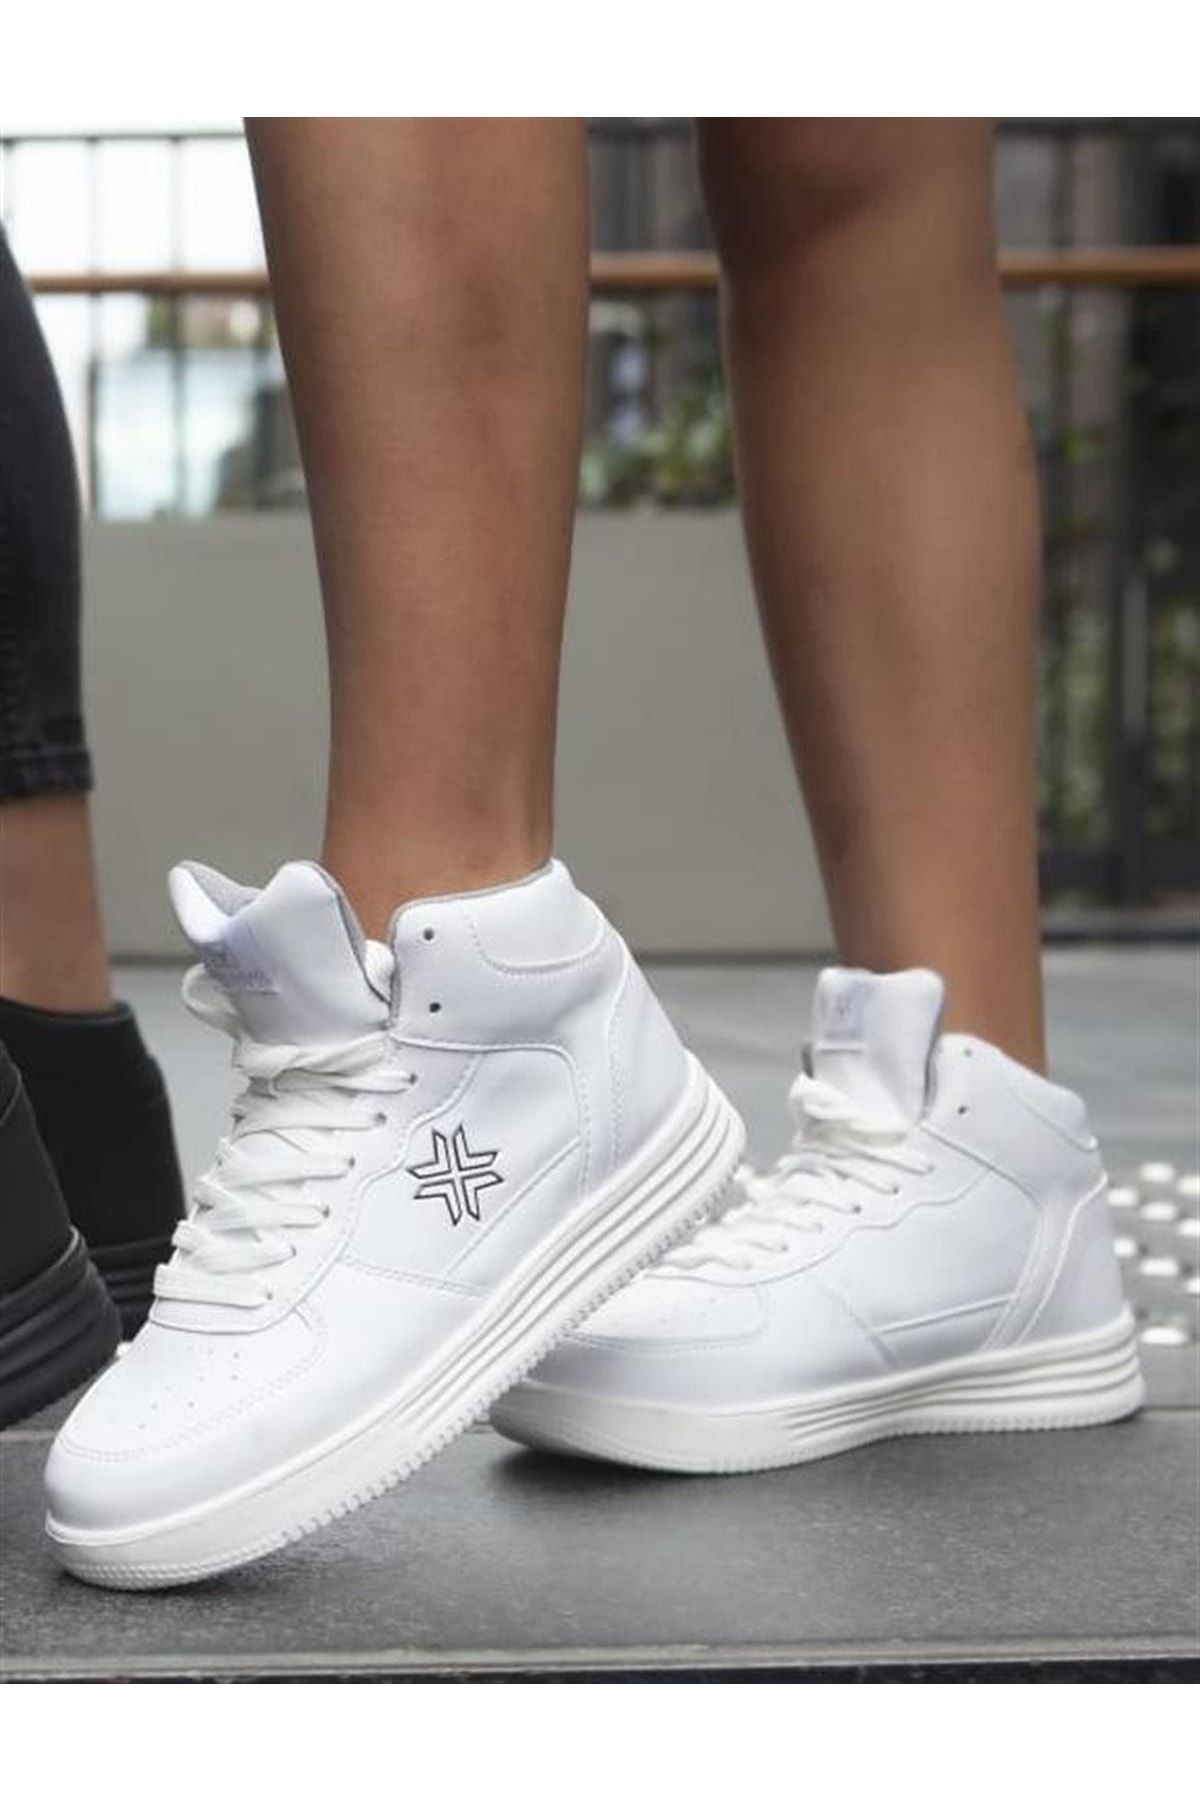 BUCKHEAD Unisex Af Jordan Confort Sneaker Bilekli Spor Bot Ayakkabı